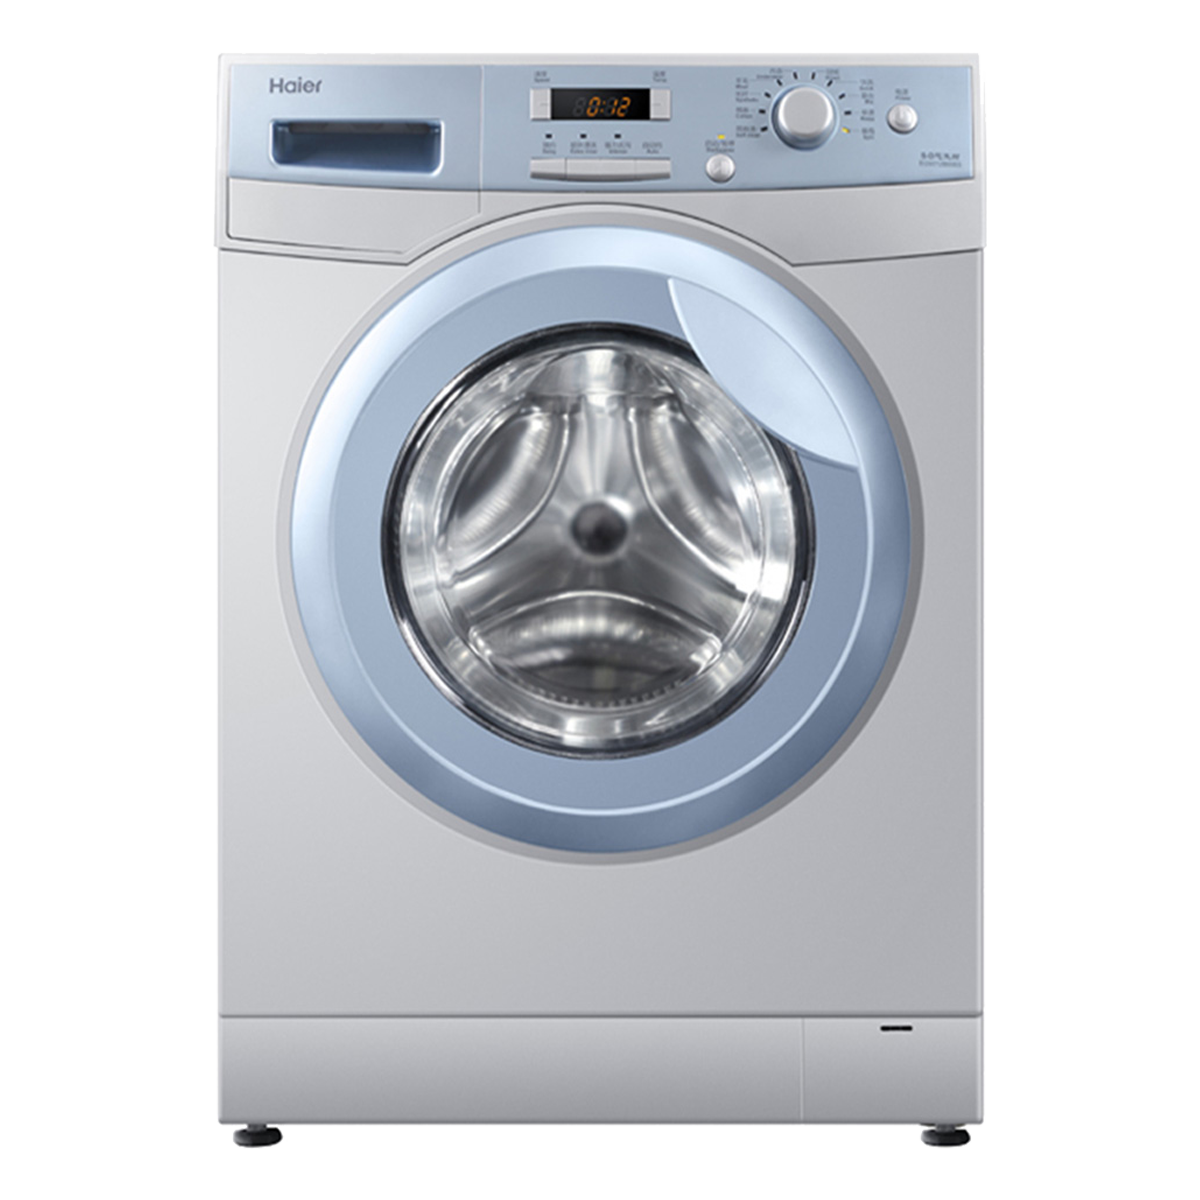 海尔Haier洗衣机 EG9012B866S 说明书